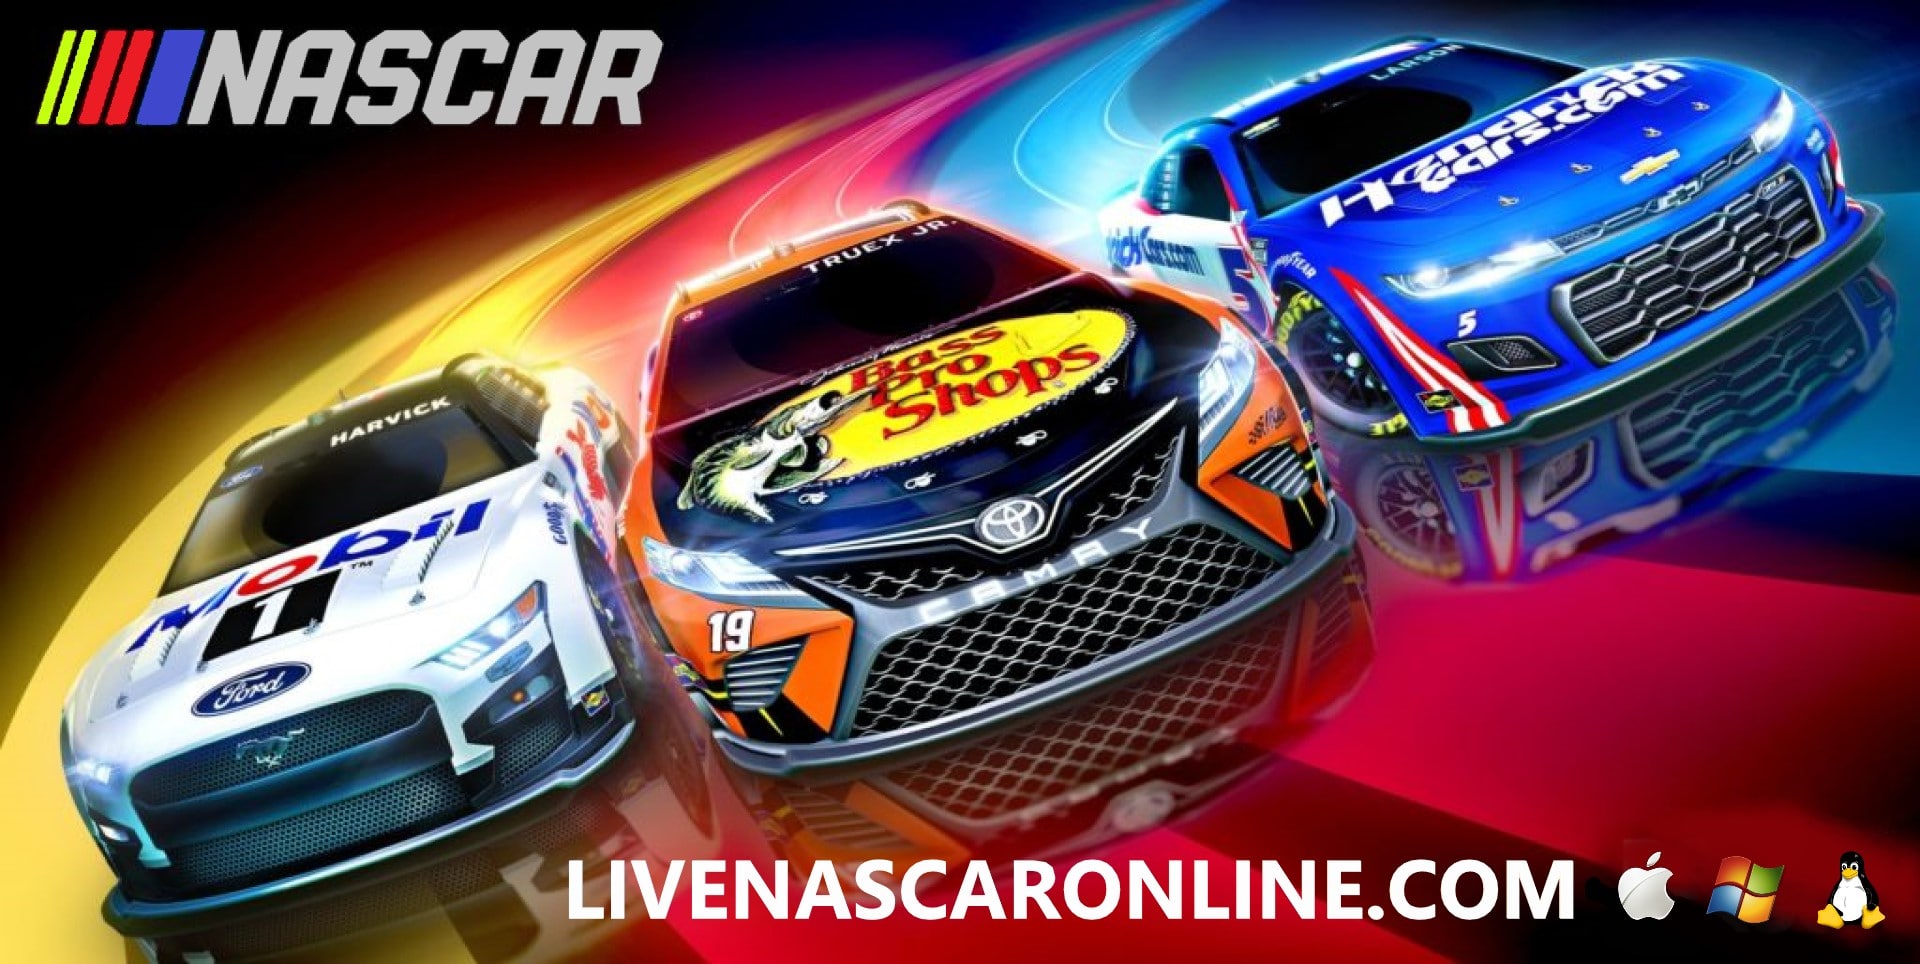 WATCH LIVE NASCAR ONLINE 2022: NASCAR Live TV Stream slider